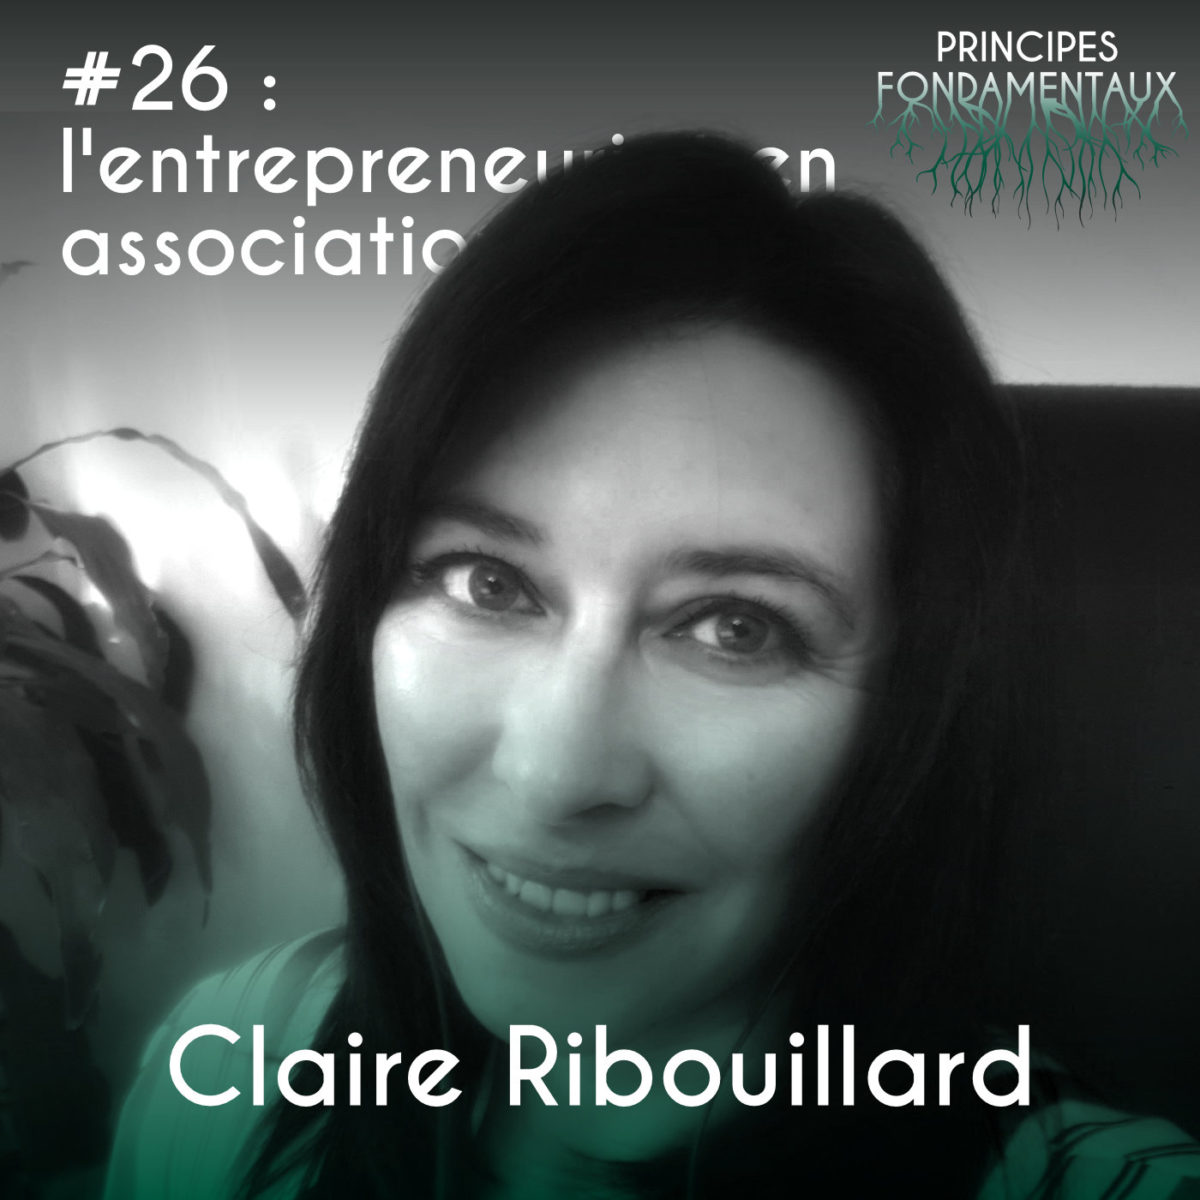 Couverture Podcast #26 : Claire Ribouillard - l'entrepreneuriat en association